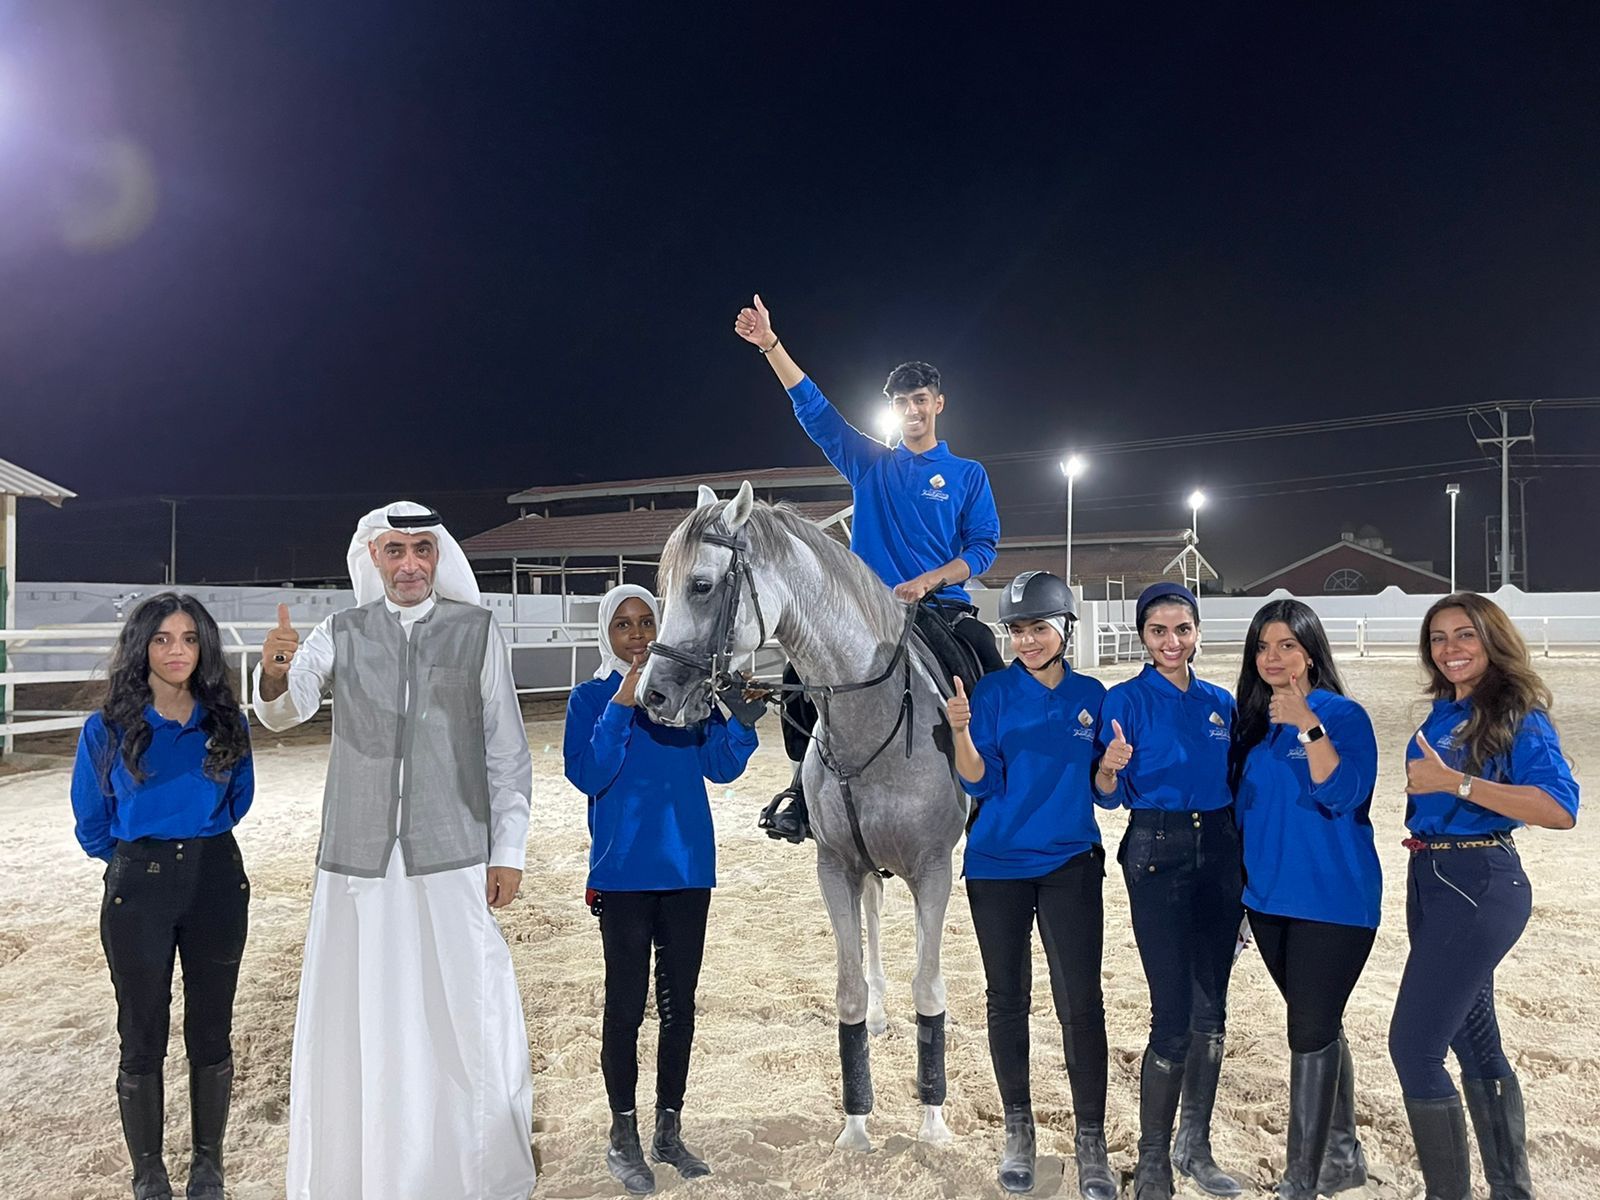 تأهل أول فريق للفارسات السعوديات من برنامج ” صناعة الفارسة من الصفر للعالمية ” في البرنامج التأهيلي للقدرة والتحمل